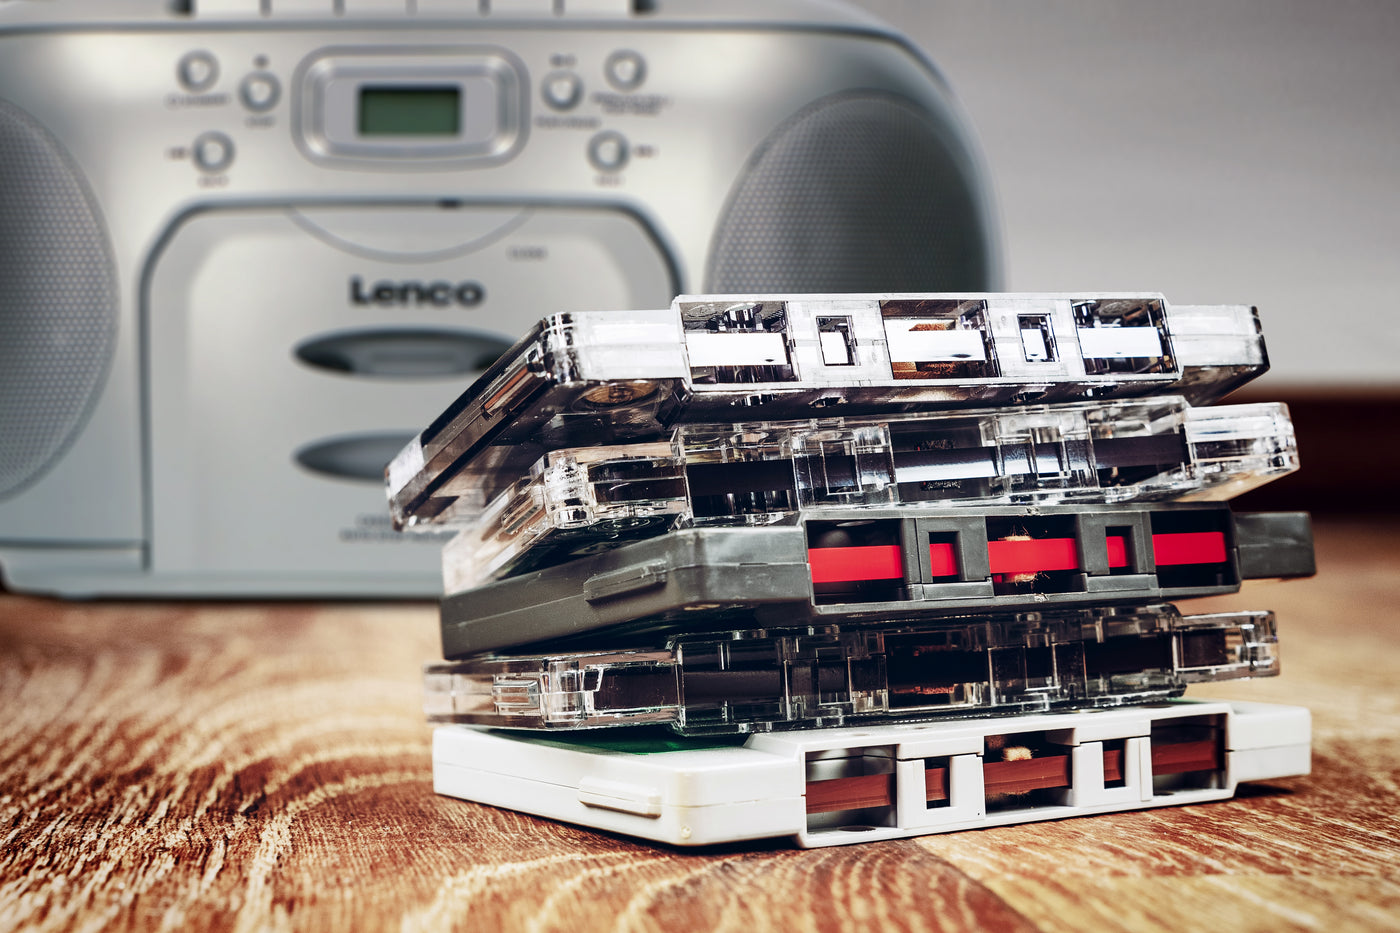 Lenco SCD-420SI - Tragbares FM-Radio mit CD-Player und Kassettendeck - Kopfhöreranschluß - Silber